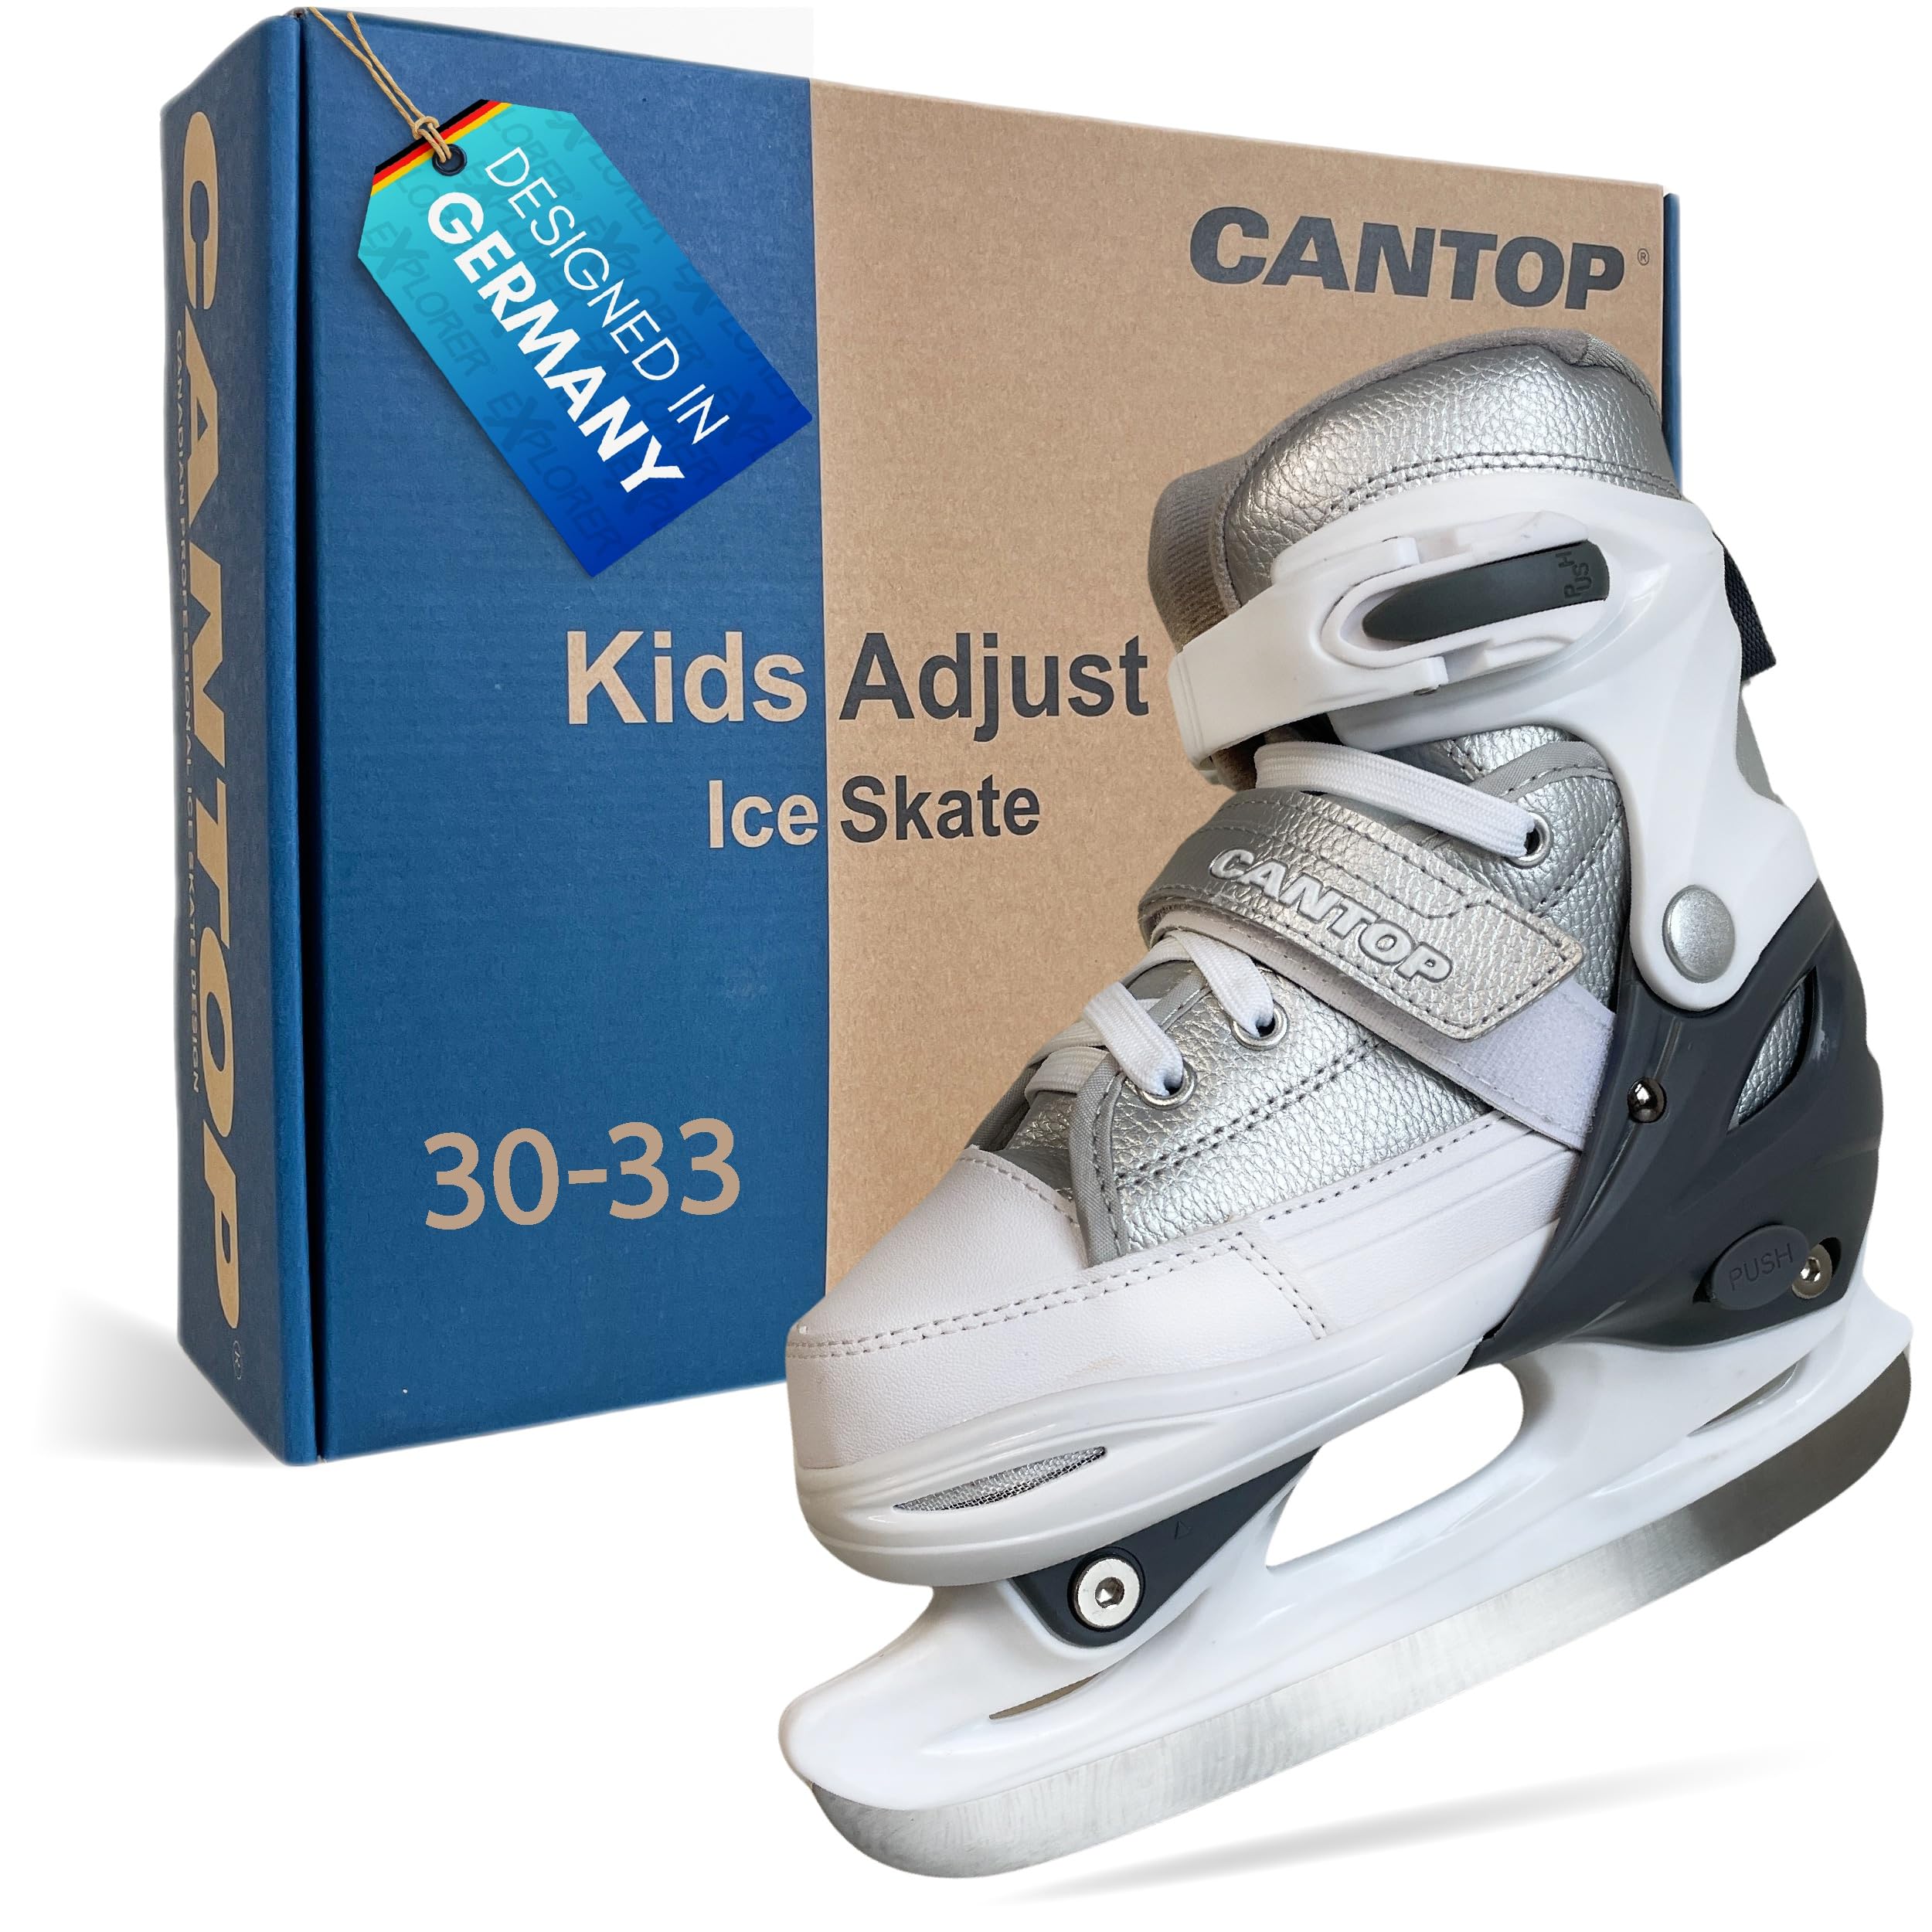 EXPLORER Cantop Schlittschuhe Kinder verstellbar Größe 30-33 für Jungen, Mädchen, Damen und Herren Eishockey Schlittschuh im Sneaker Design in Silber Weiß